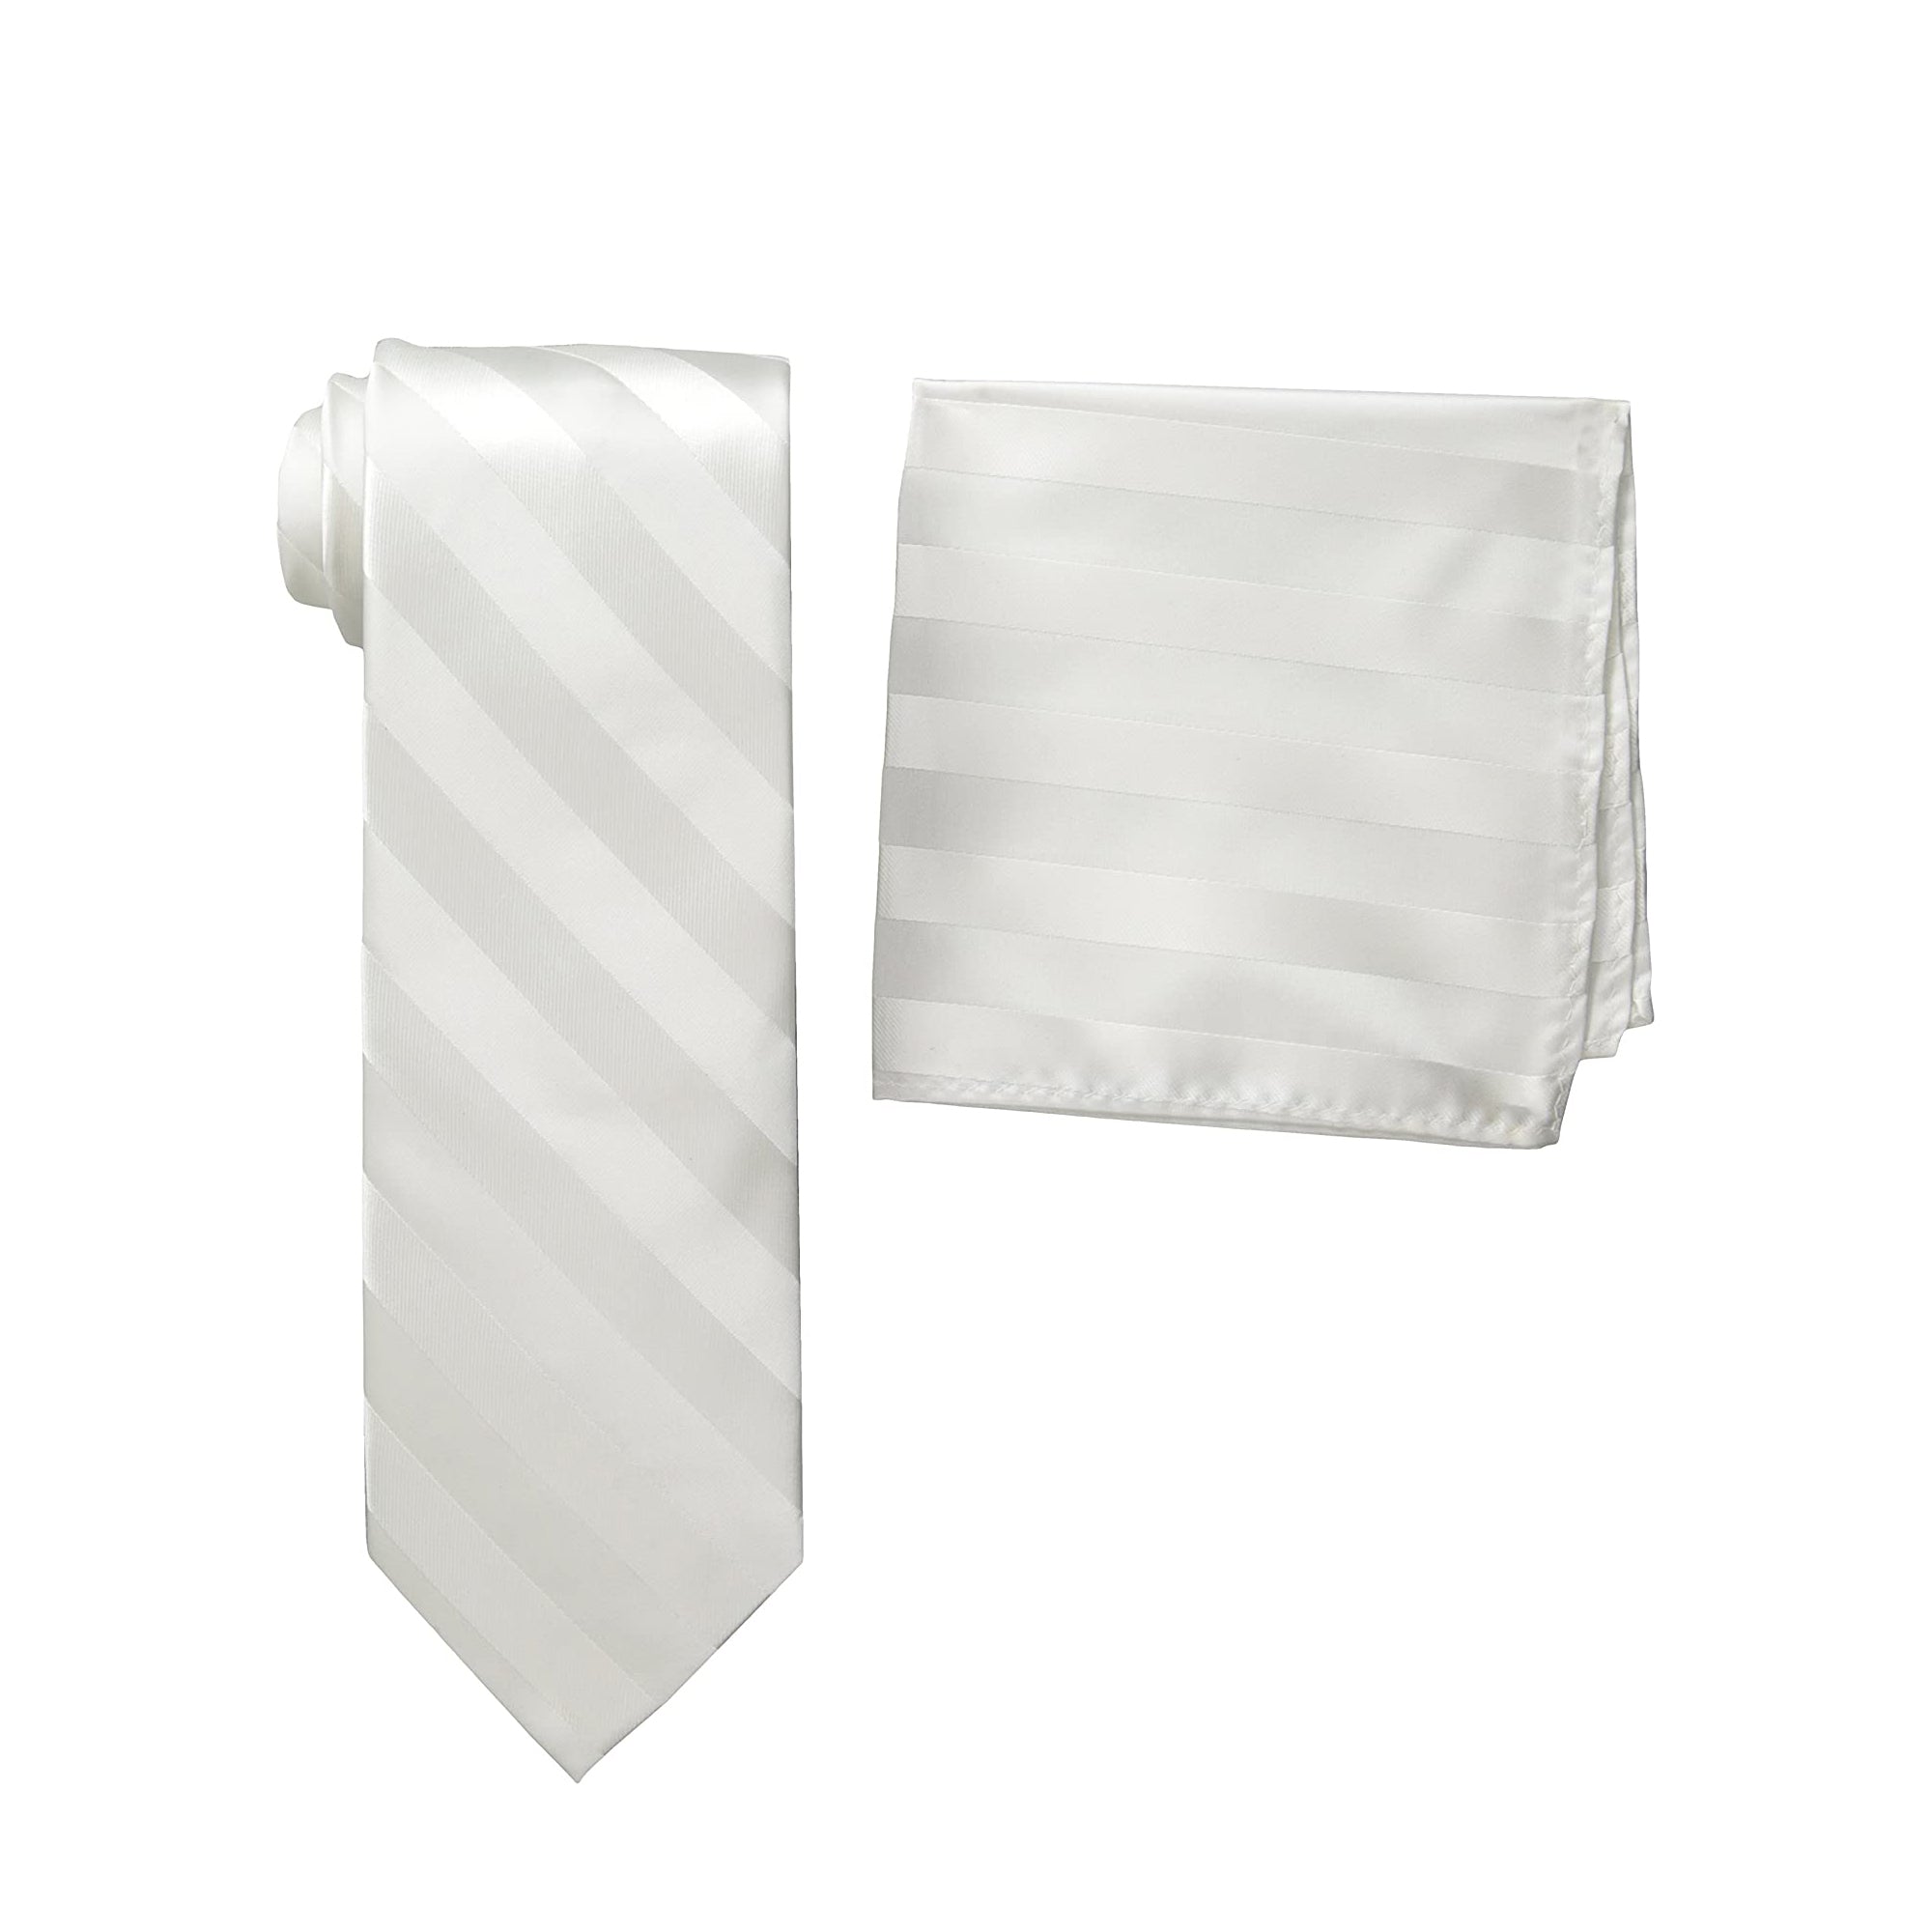 Stacy Adams Woven Formal Stripe Tie & Hanky Set